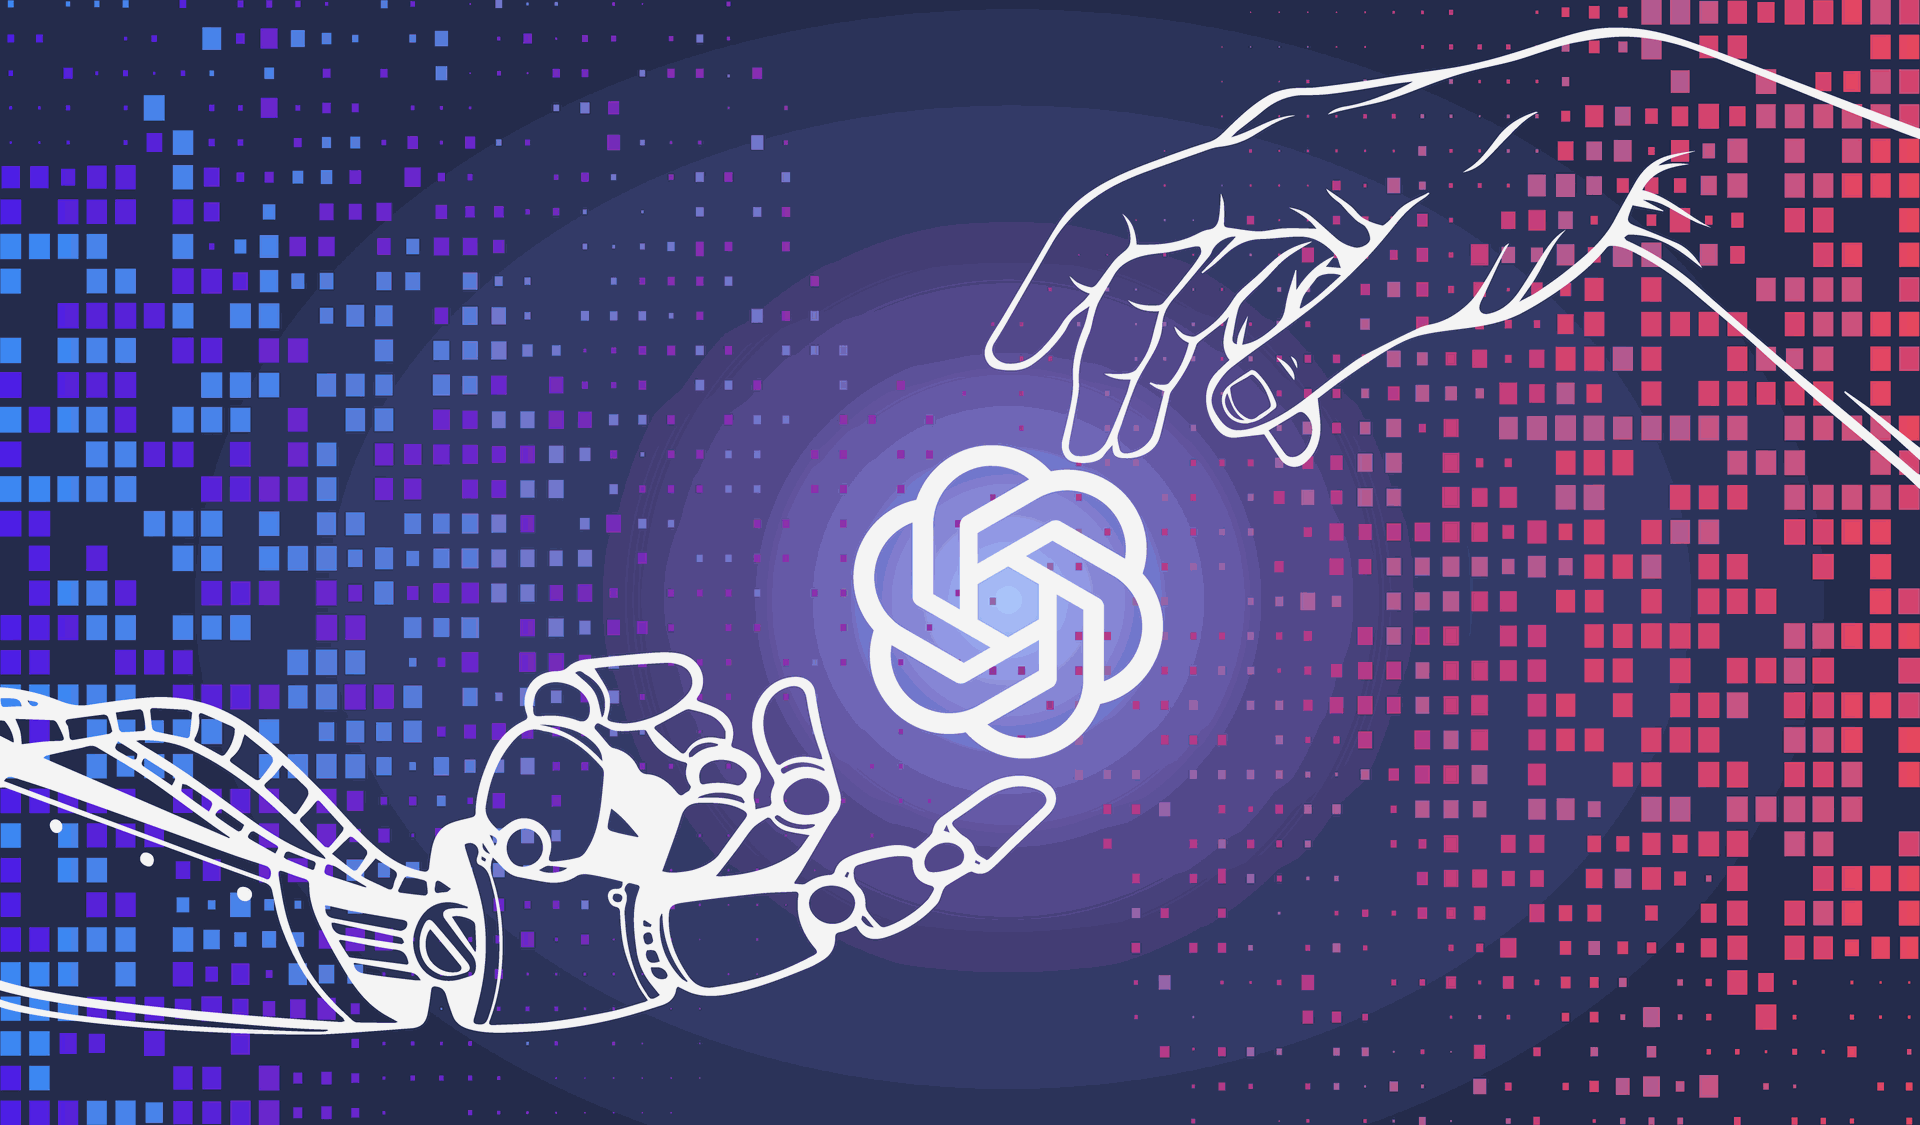 una mano humana y una mano de robot juntandose en el logo de chatgpt